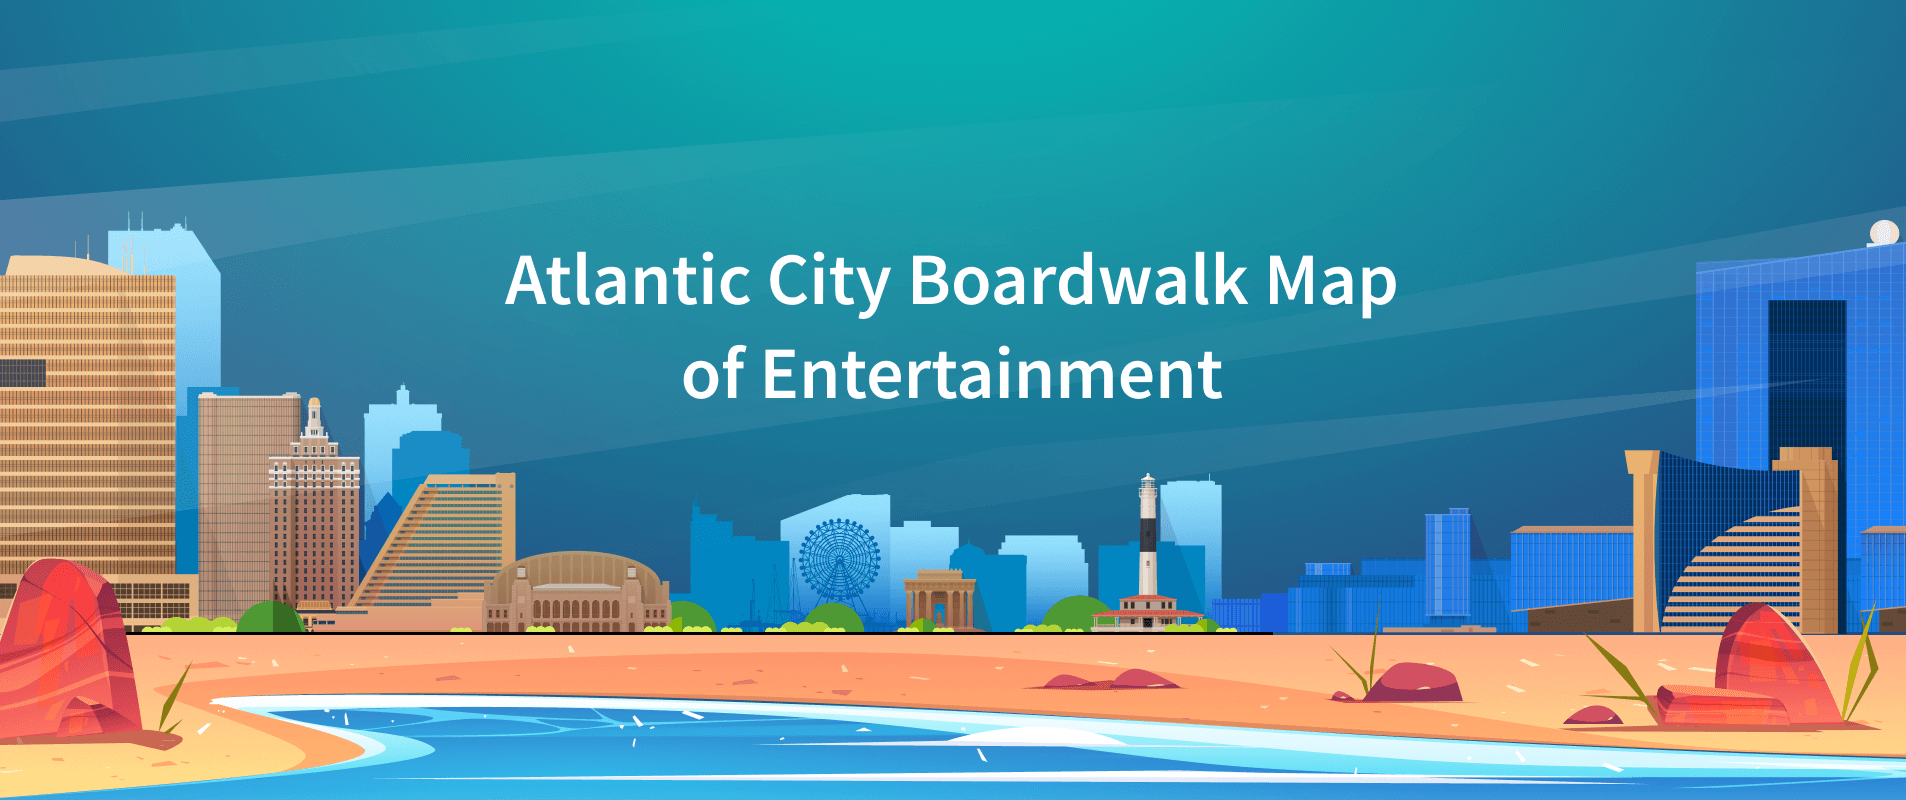 all boardwalk casinos in atlantic city